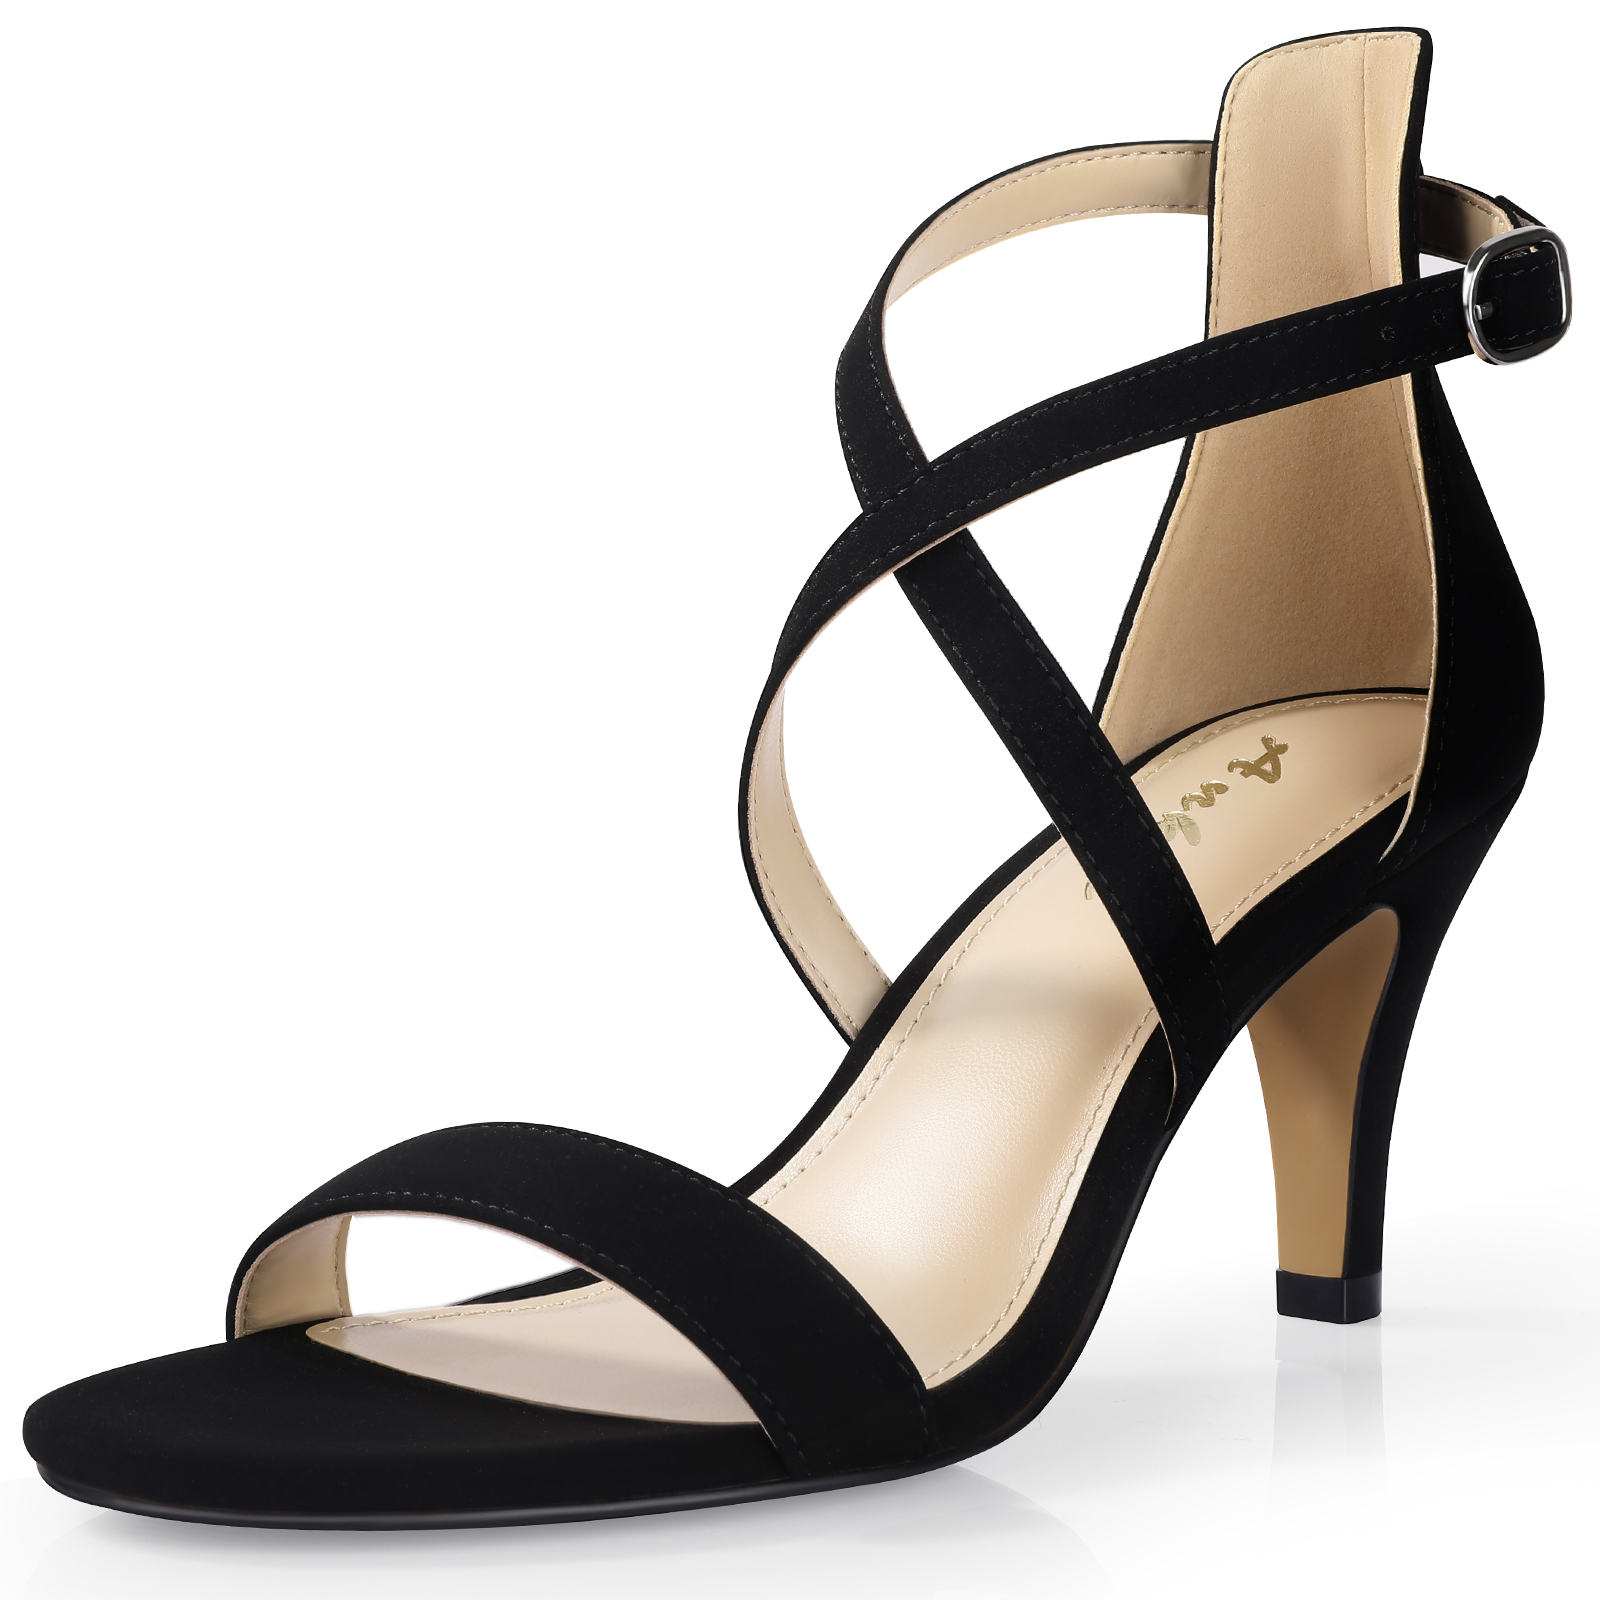 Cross Strappy Heels for Women Inch - Black